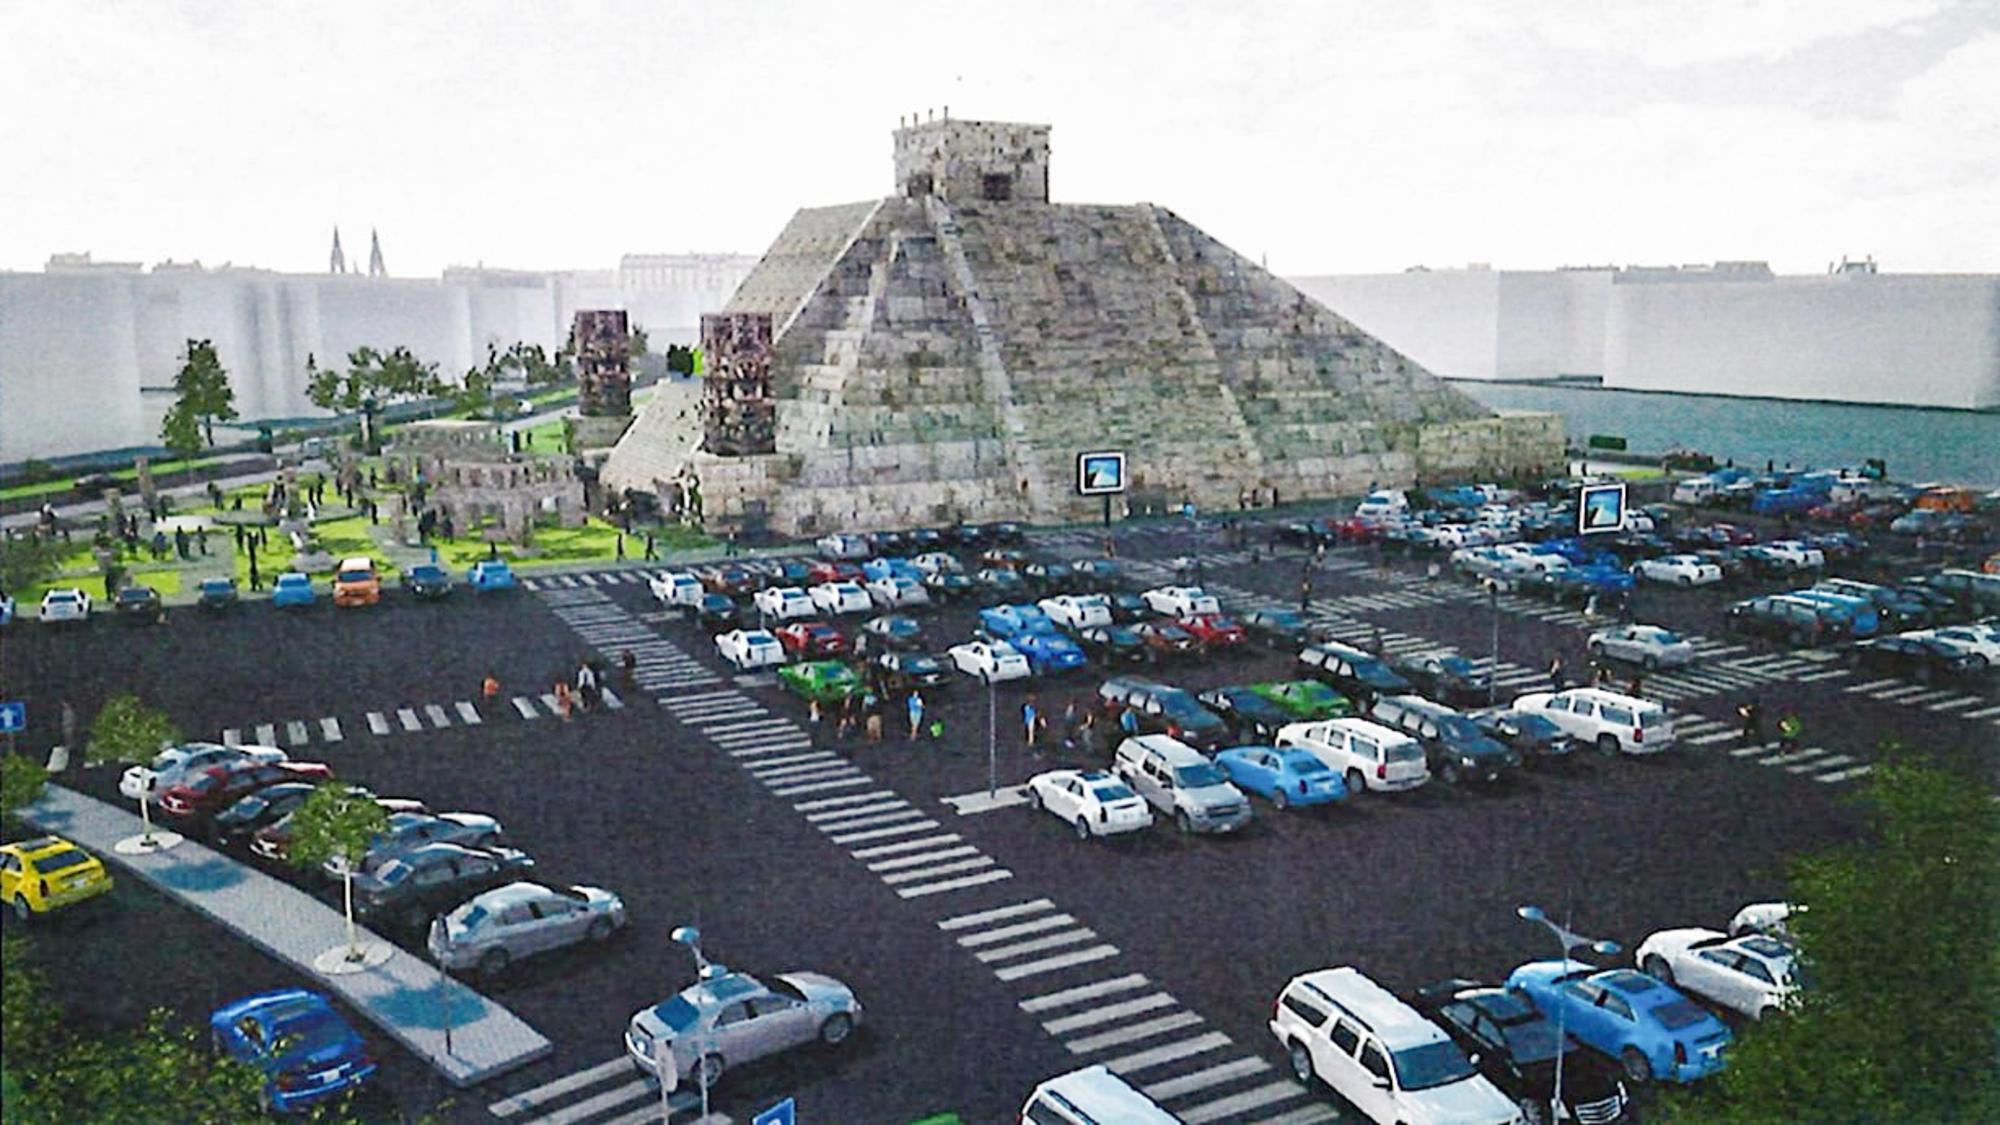 La piramide de Nacho Cano